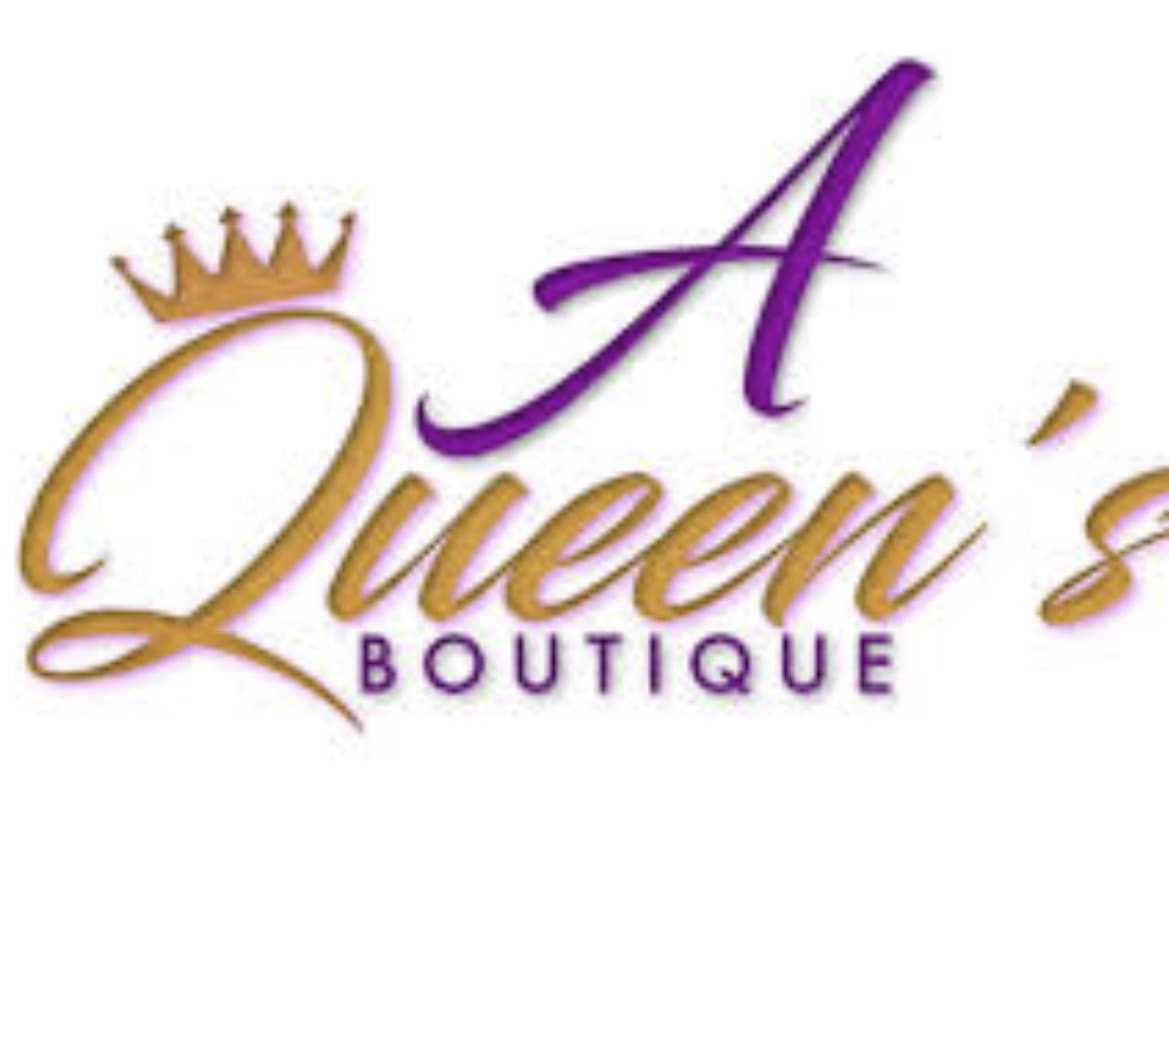 A Queens Boutique